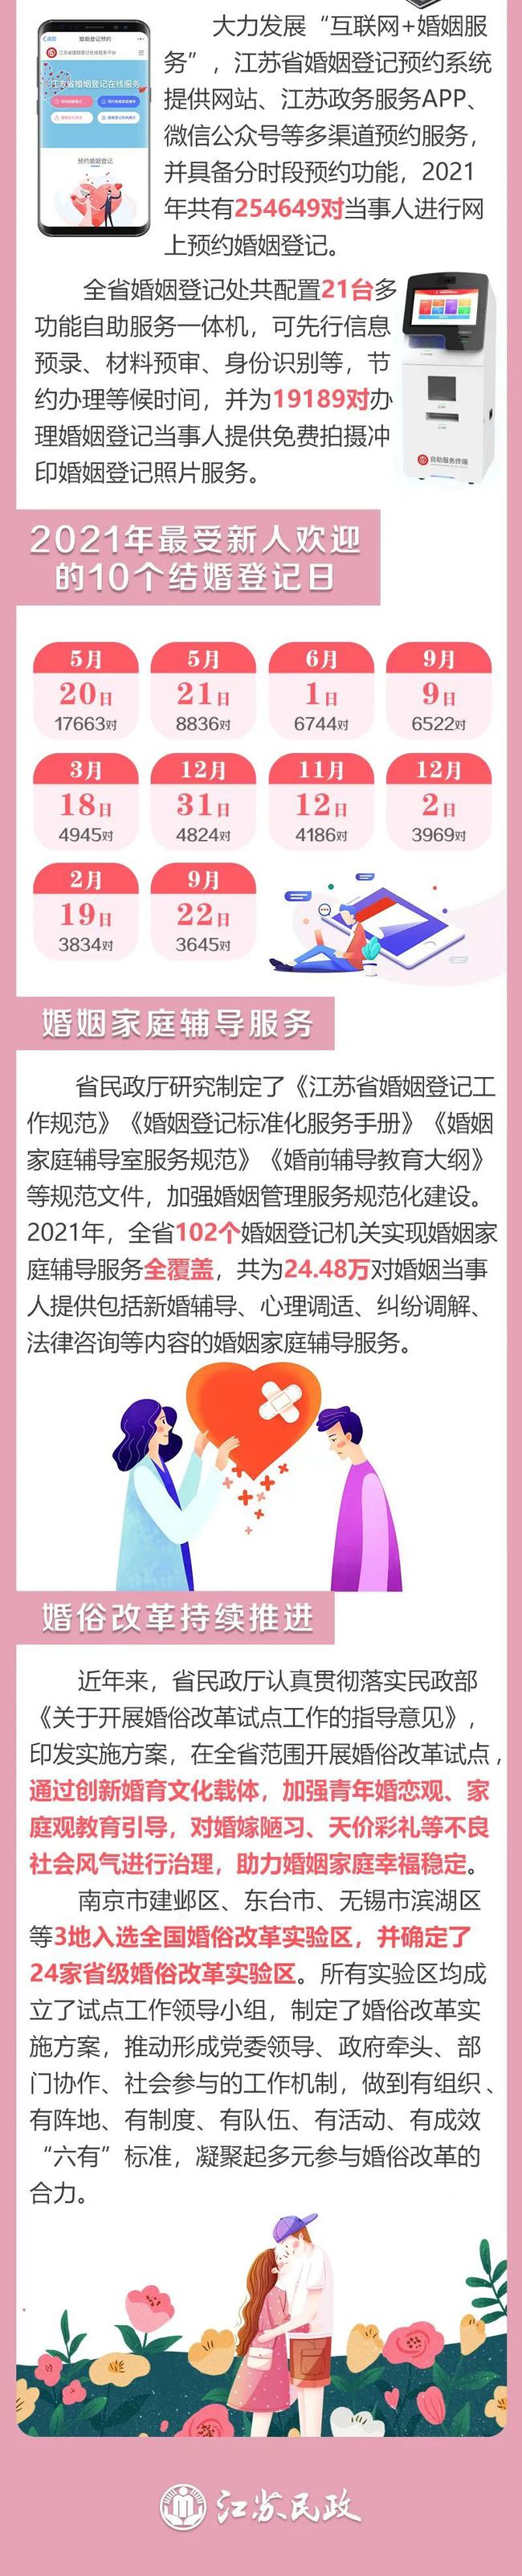 2021年江苏婚姻登记大数据出炉：初婚平均年龄27.29岁  第12张